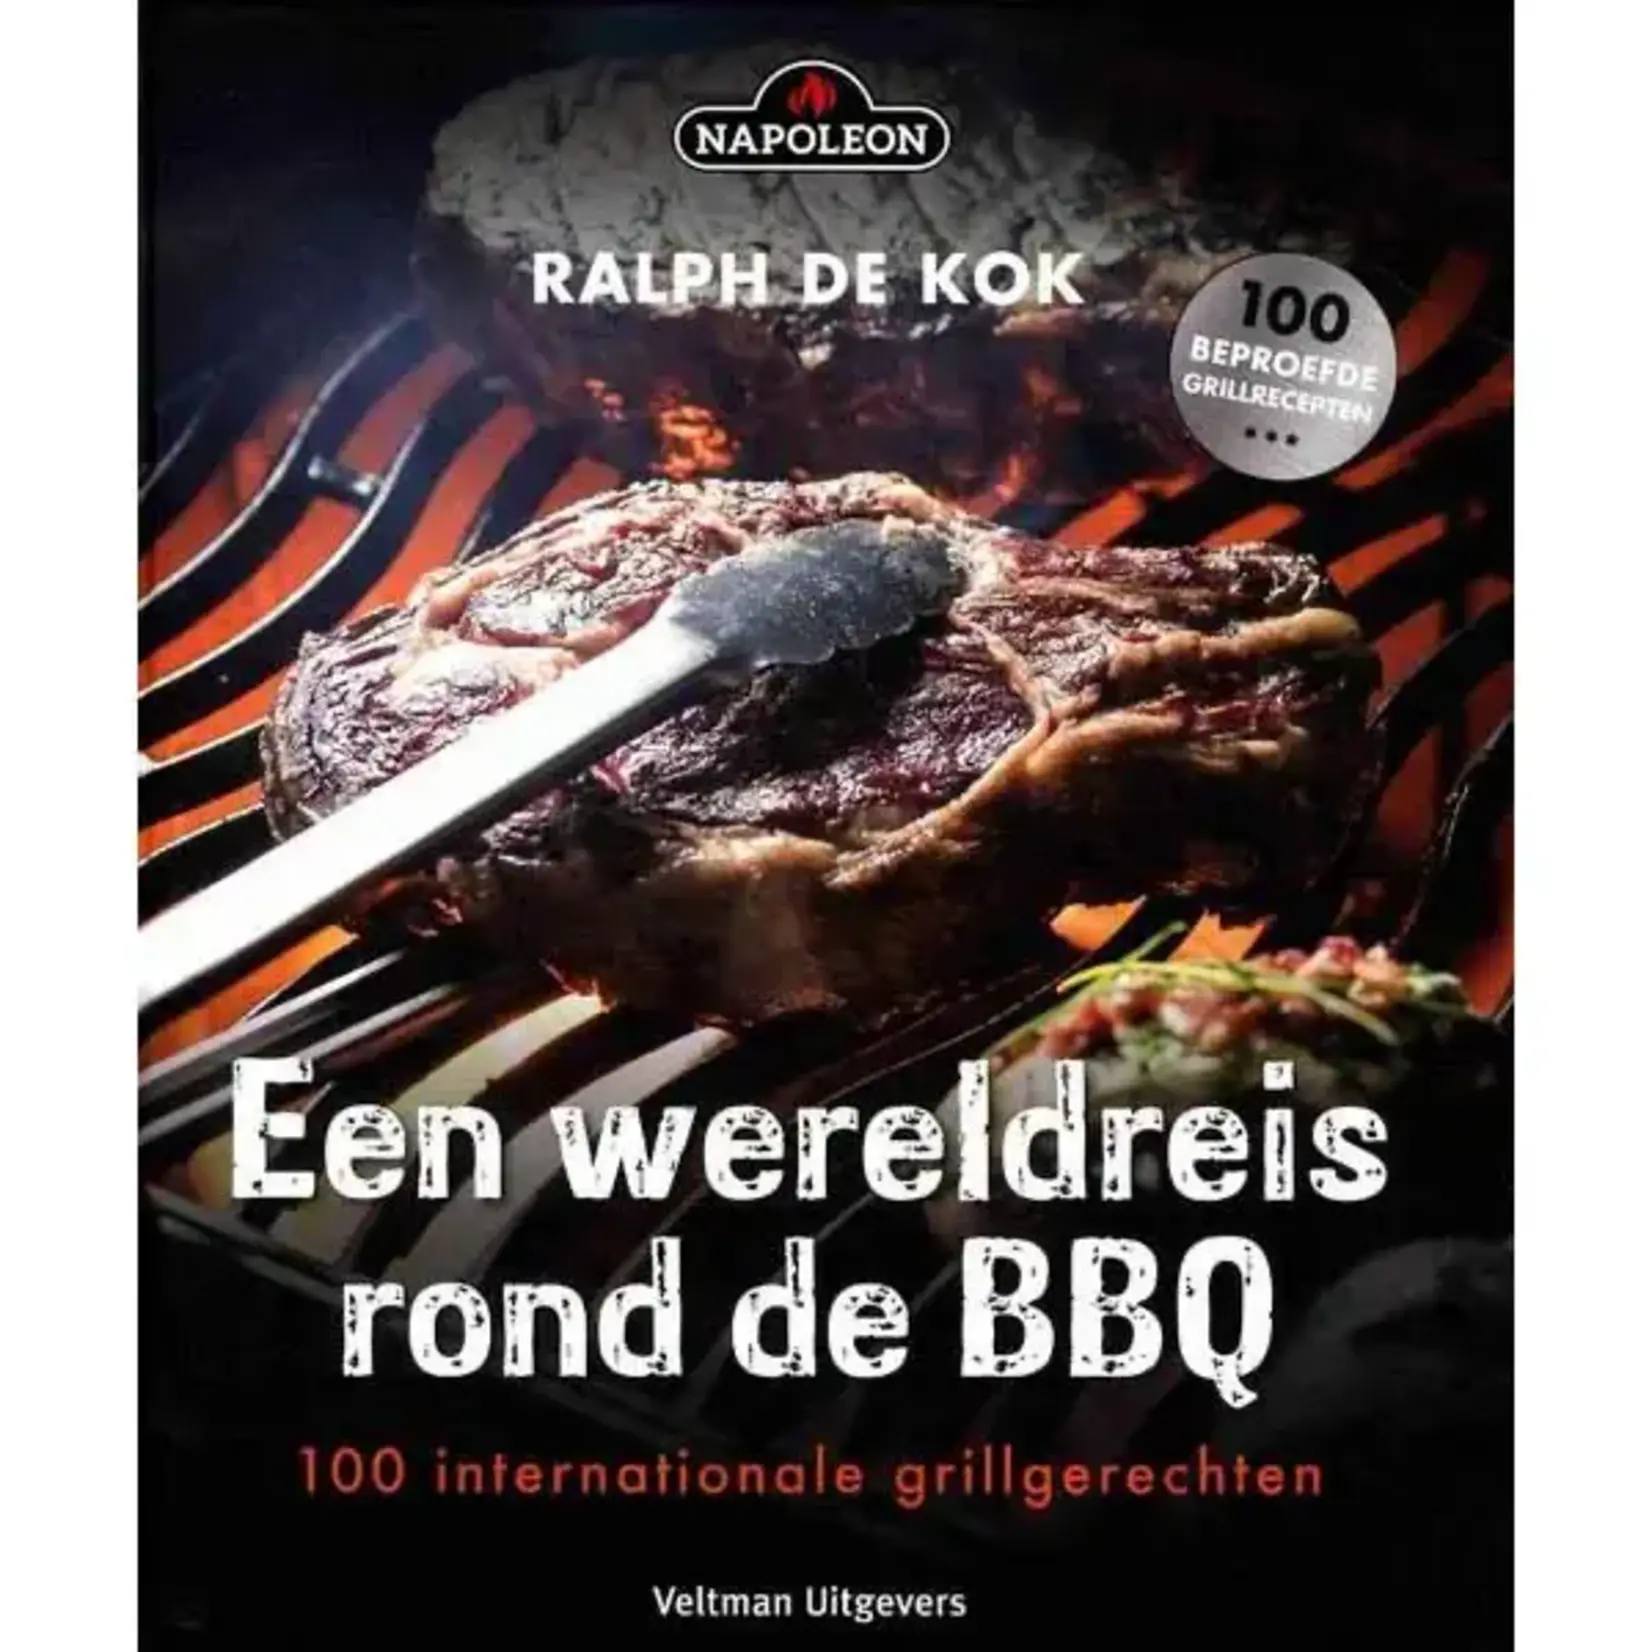 Ralph de Kok-Een wereldreis rond de BBQ (Boek Napoleon)